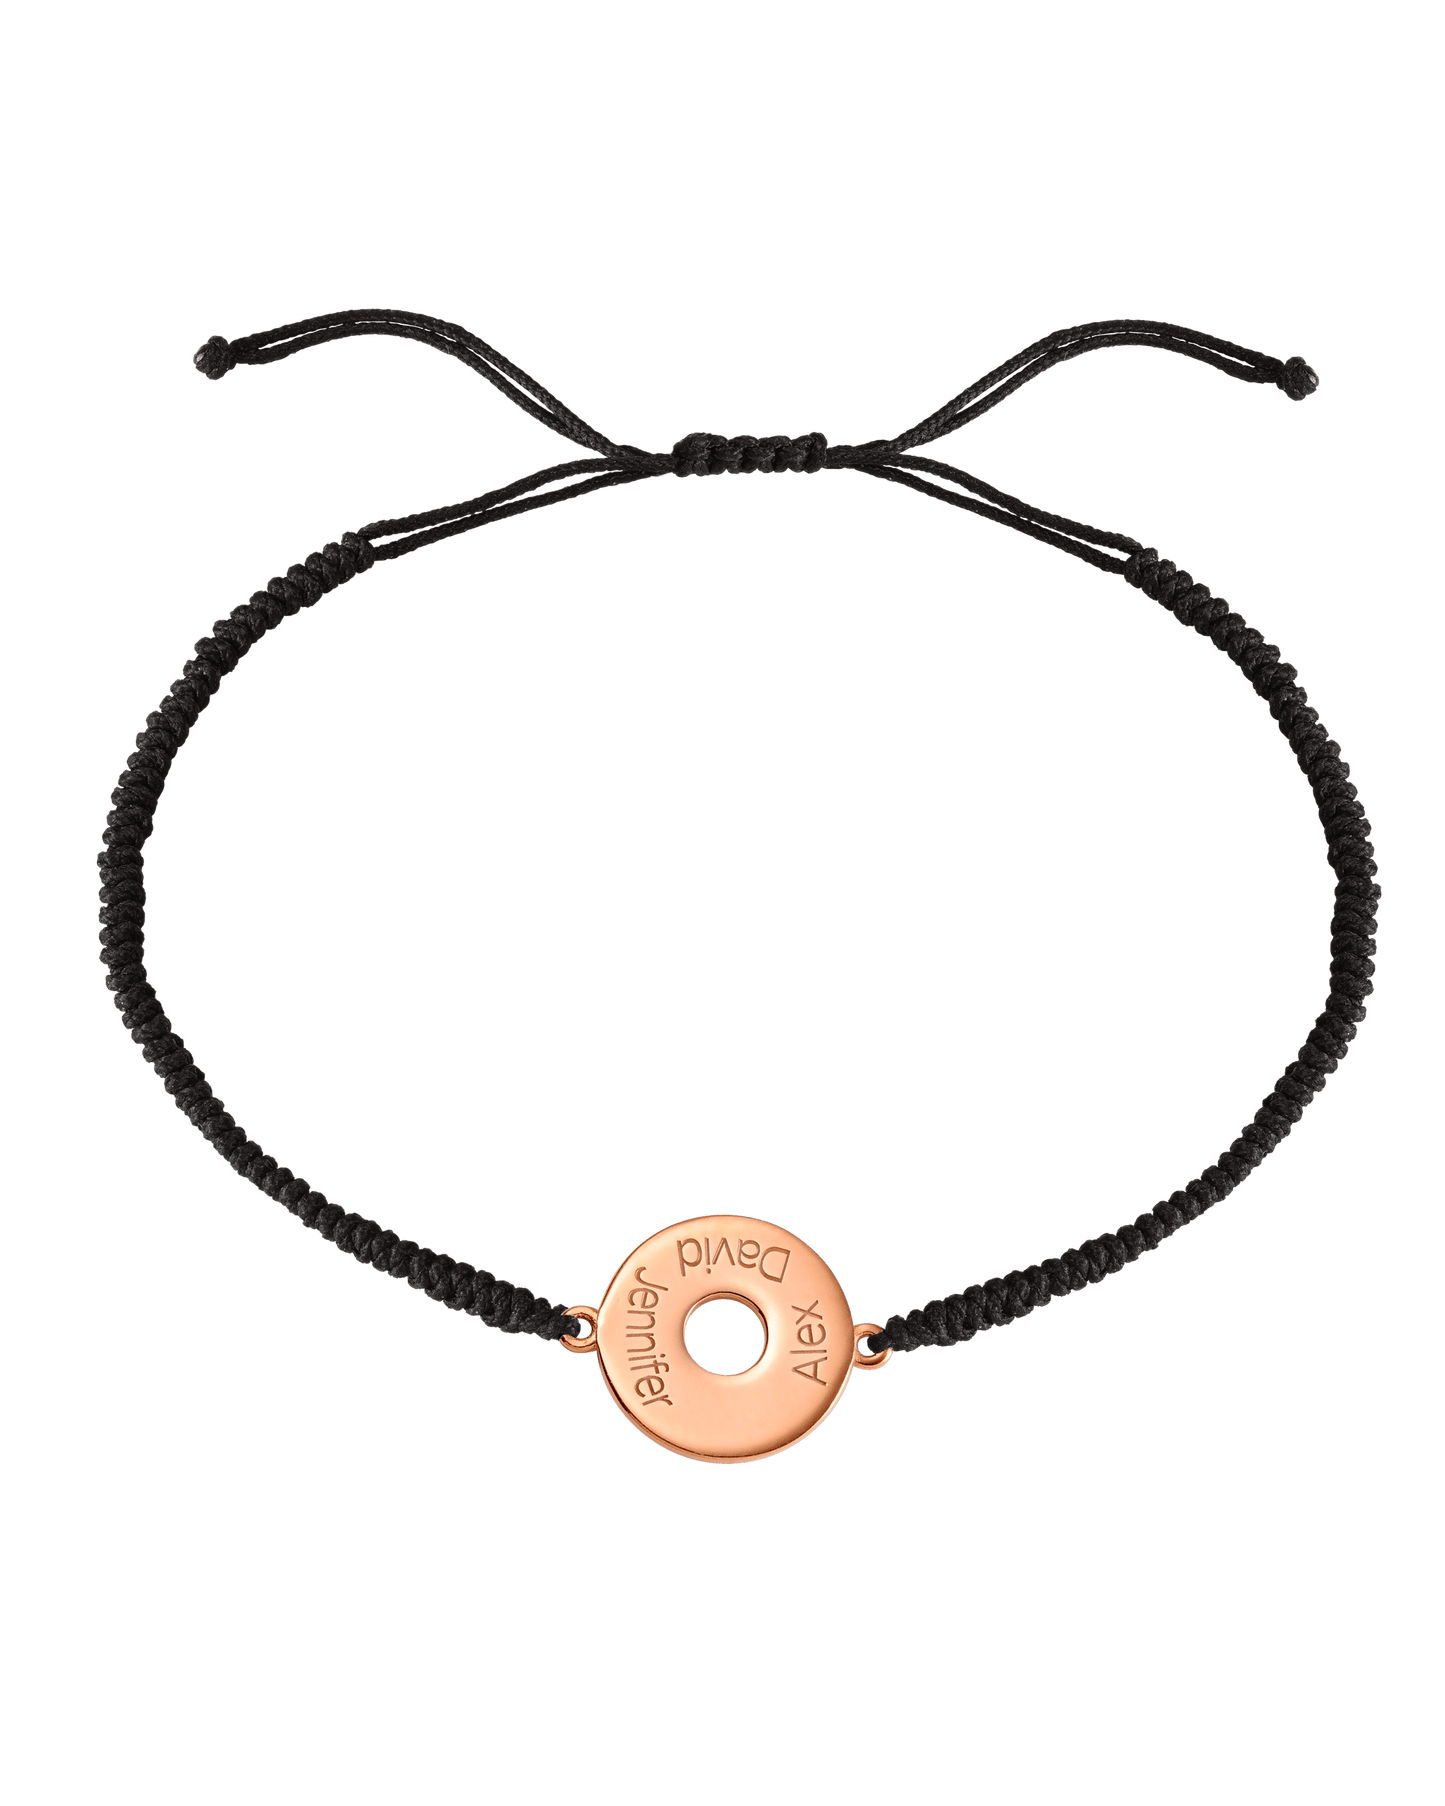 Donut Cord Bracelet - 18K Rose Vermeil Bracelets magal-dev Black 1 Names Adjustable from 4" to 9"